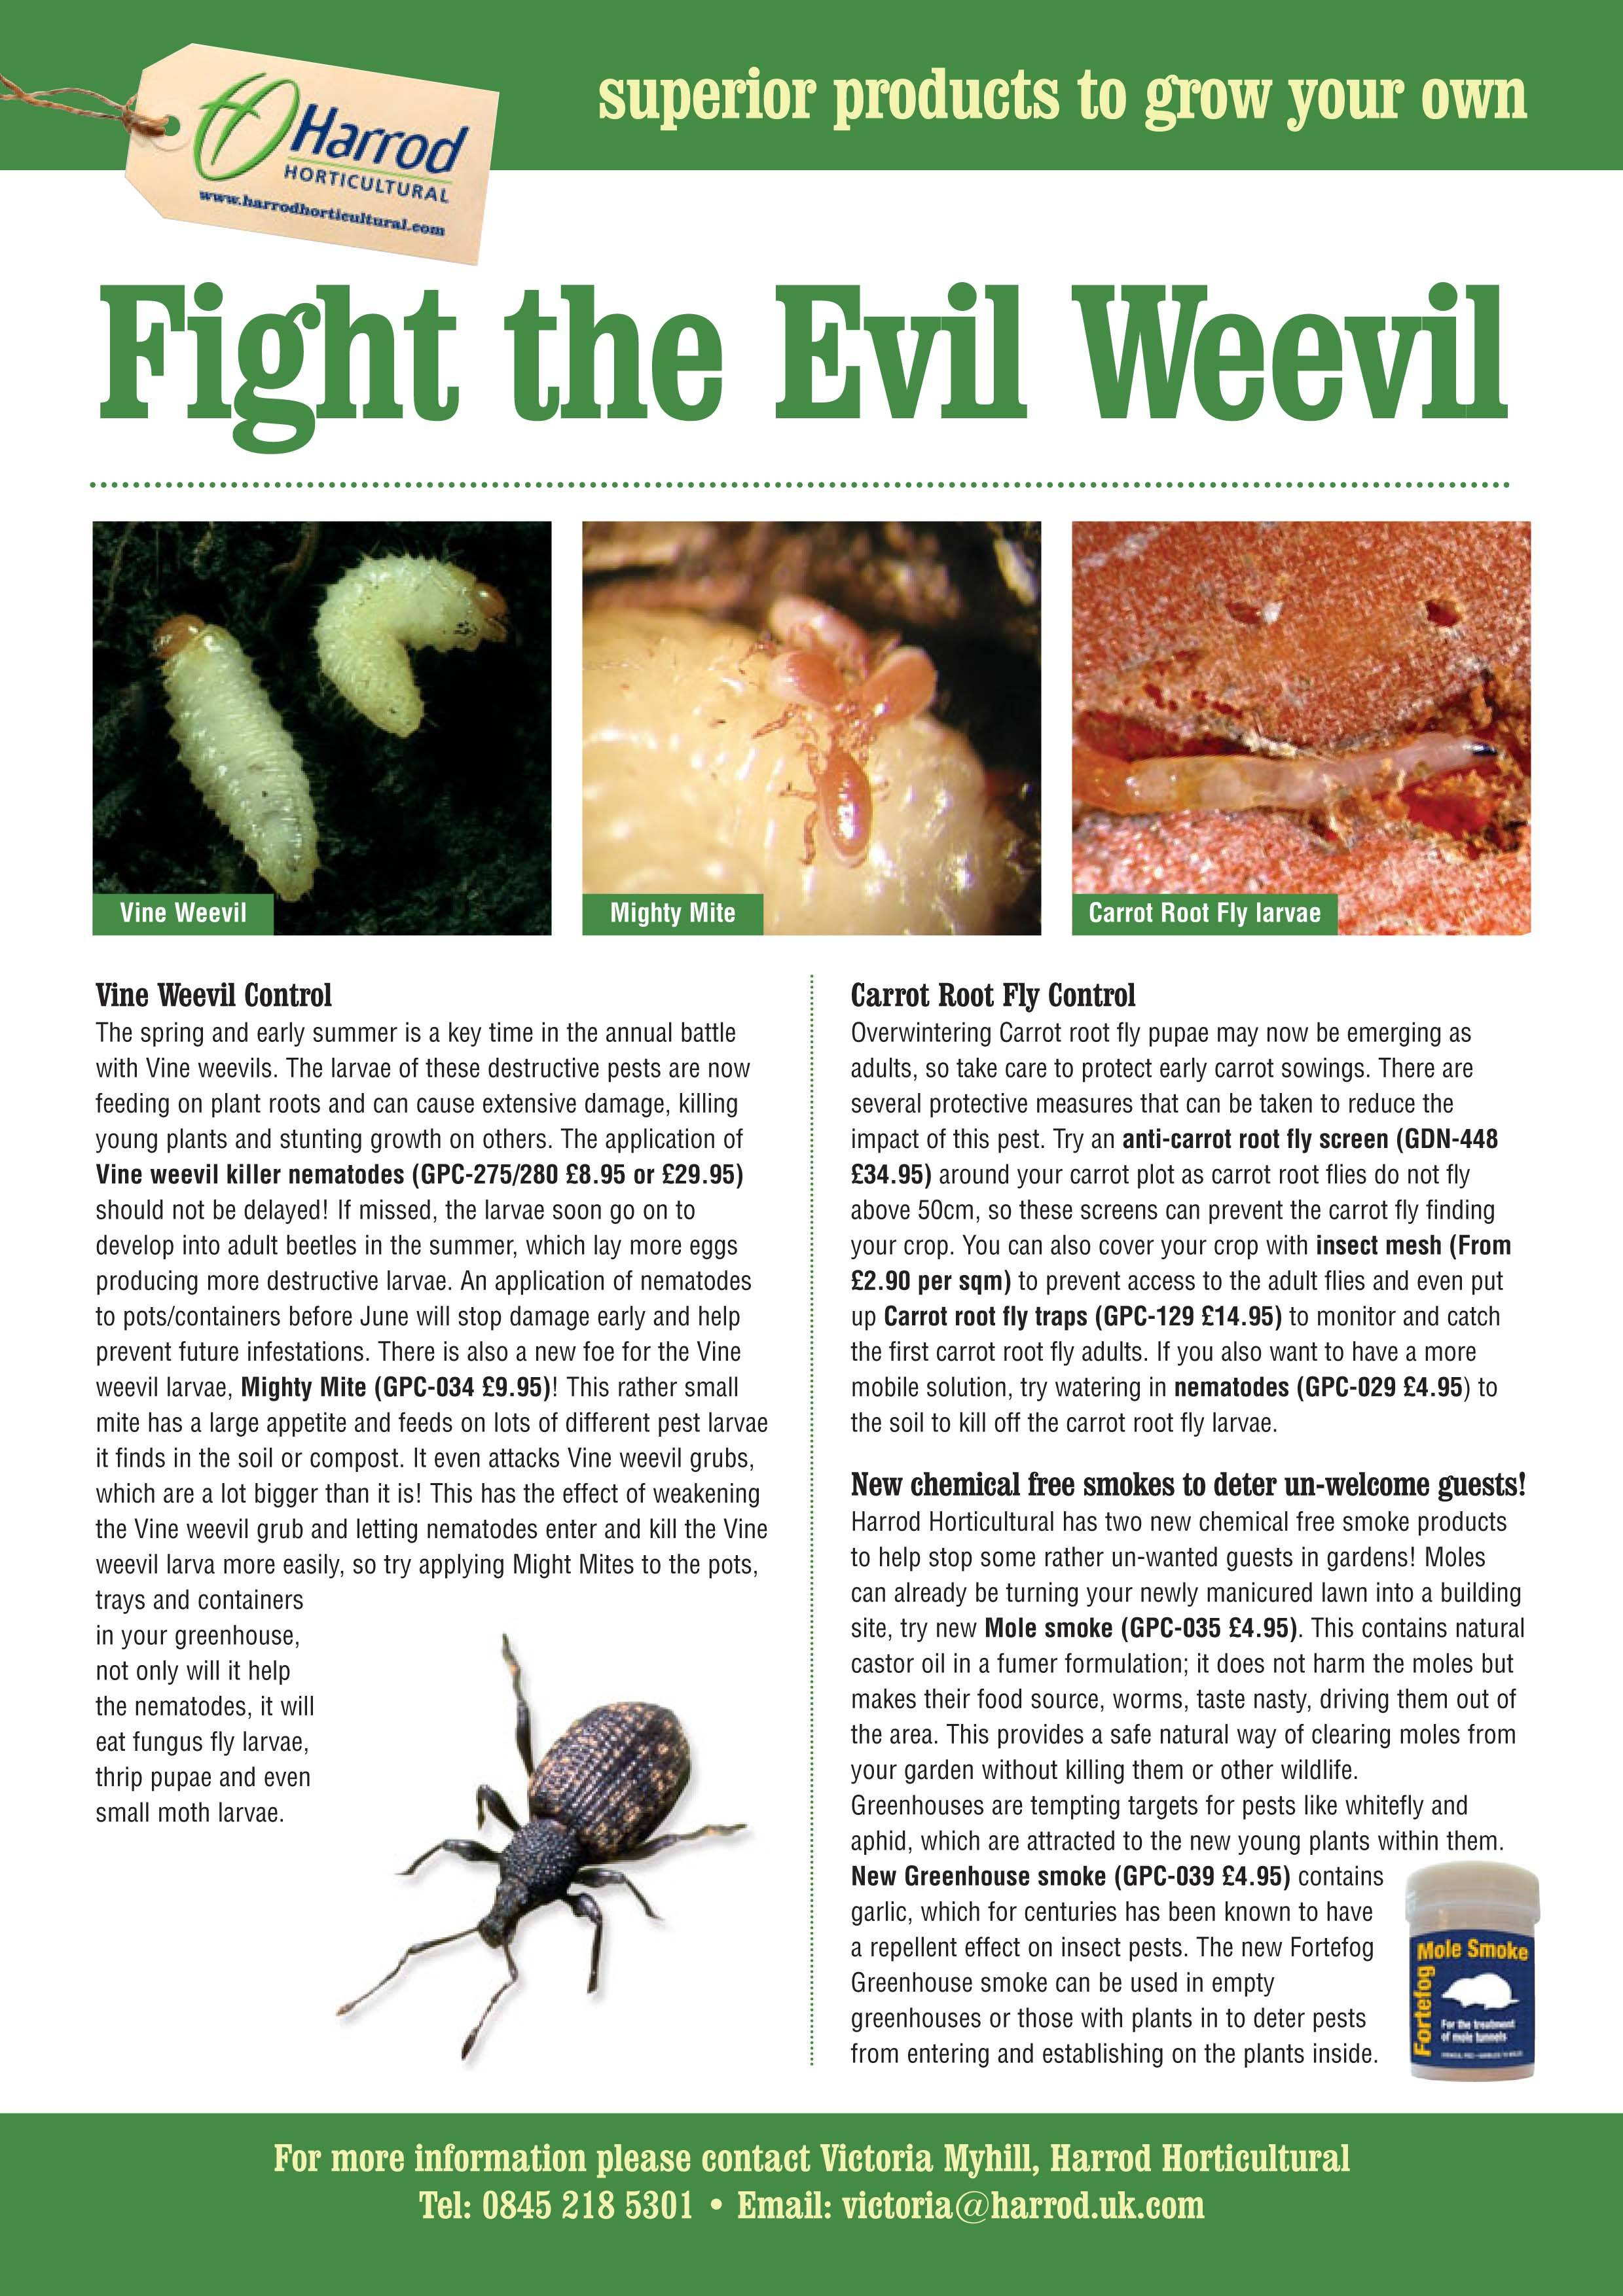 Vine Weevil Press Release